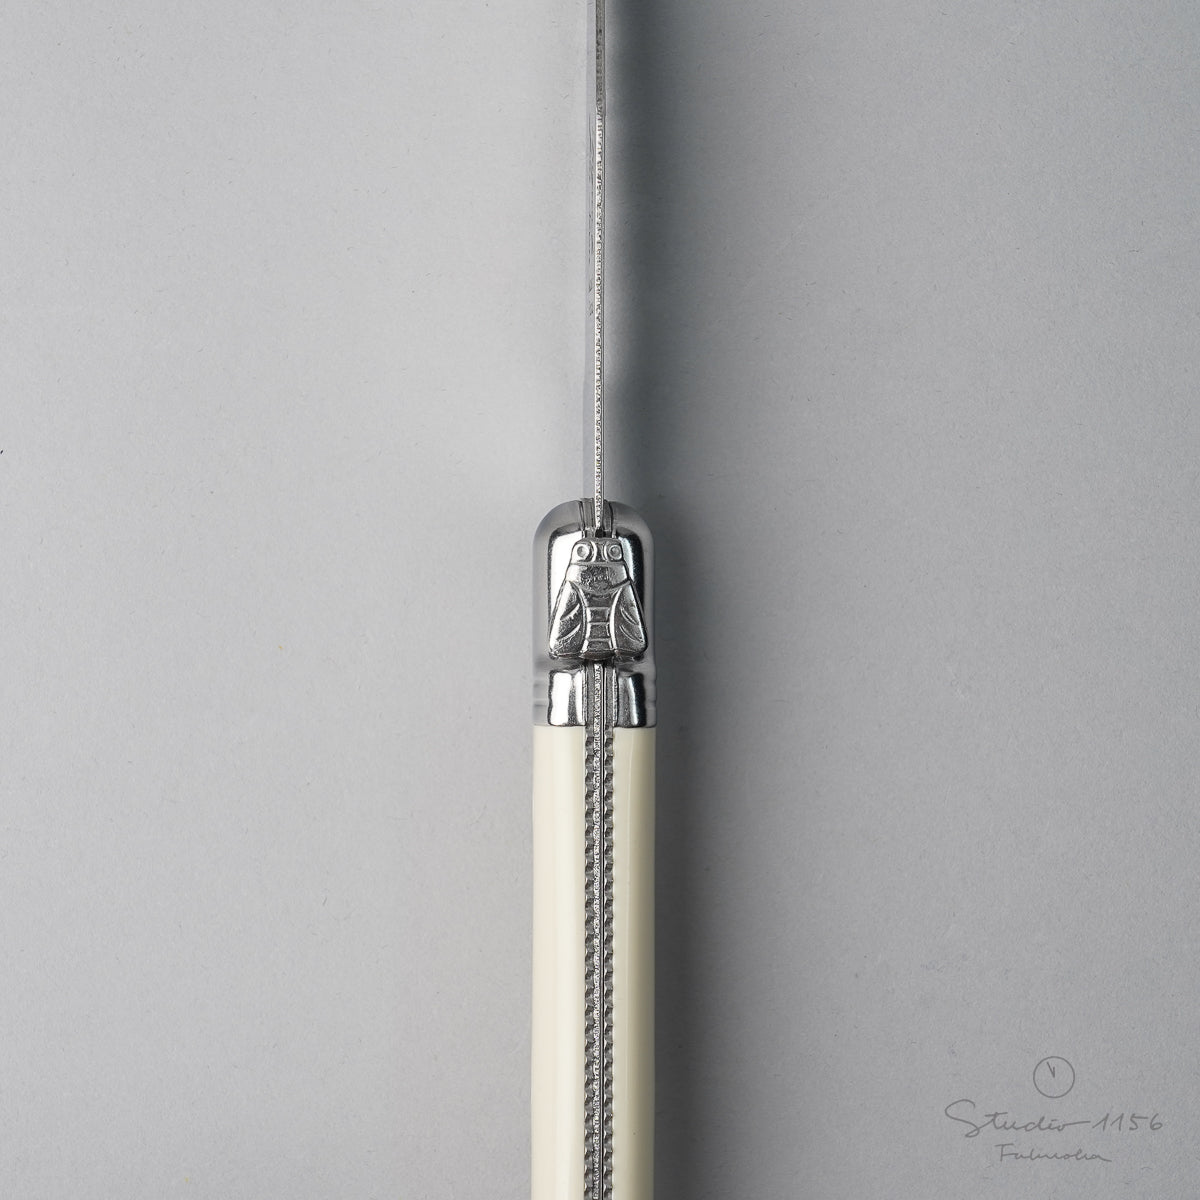 ジャン・ネロン ライヨール ステーキナイフ 23cm Cutlery-neron Studio1156